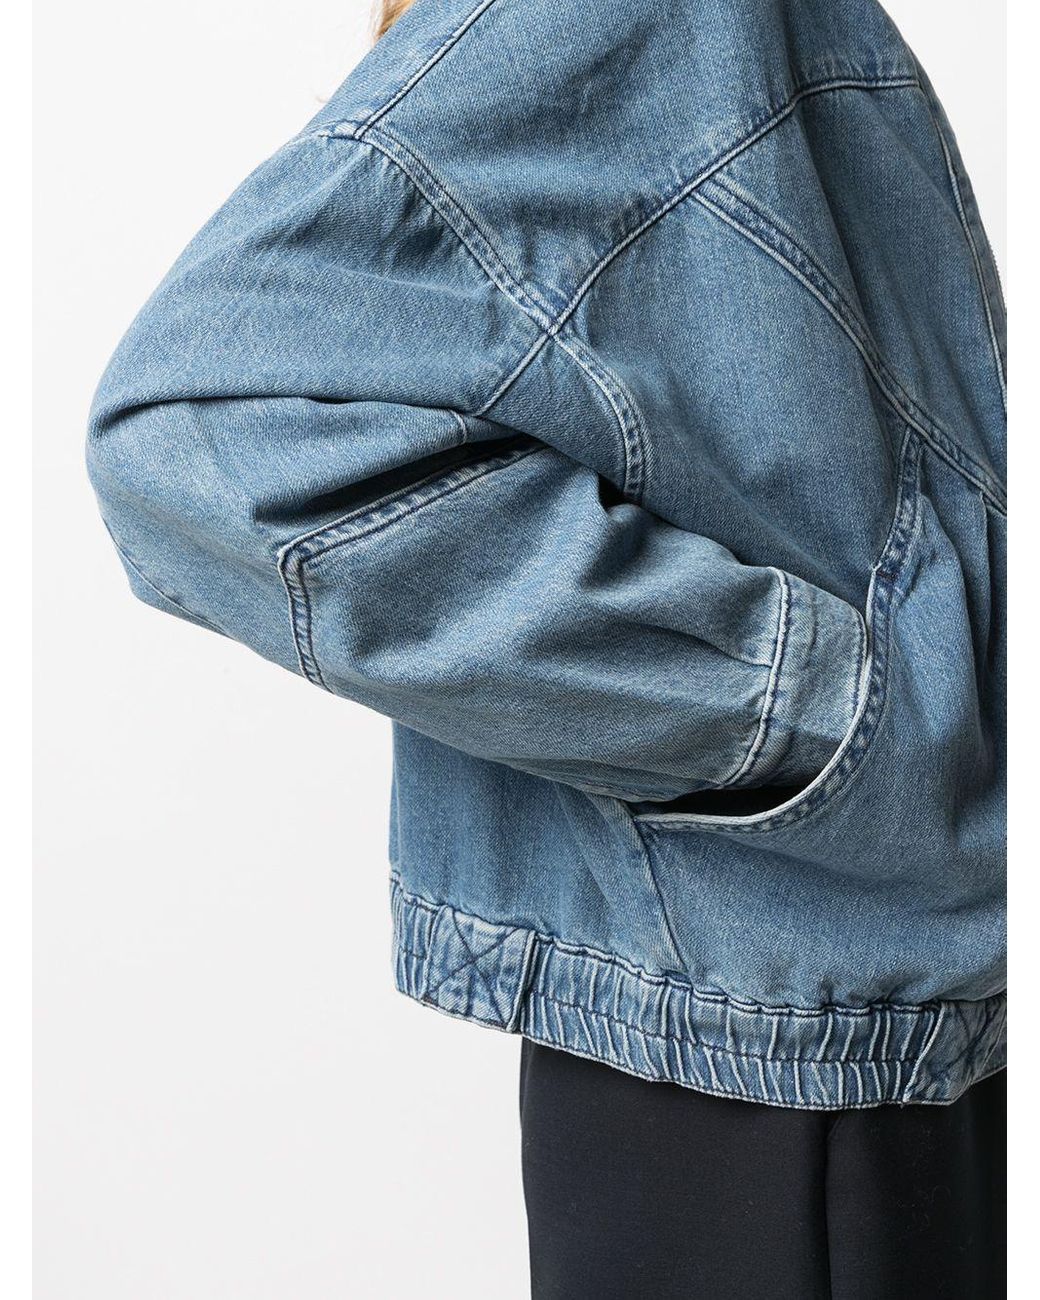 Ba&sh Louve Zipped Denim Jacket in Blue | Lyst Canada